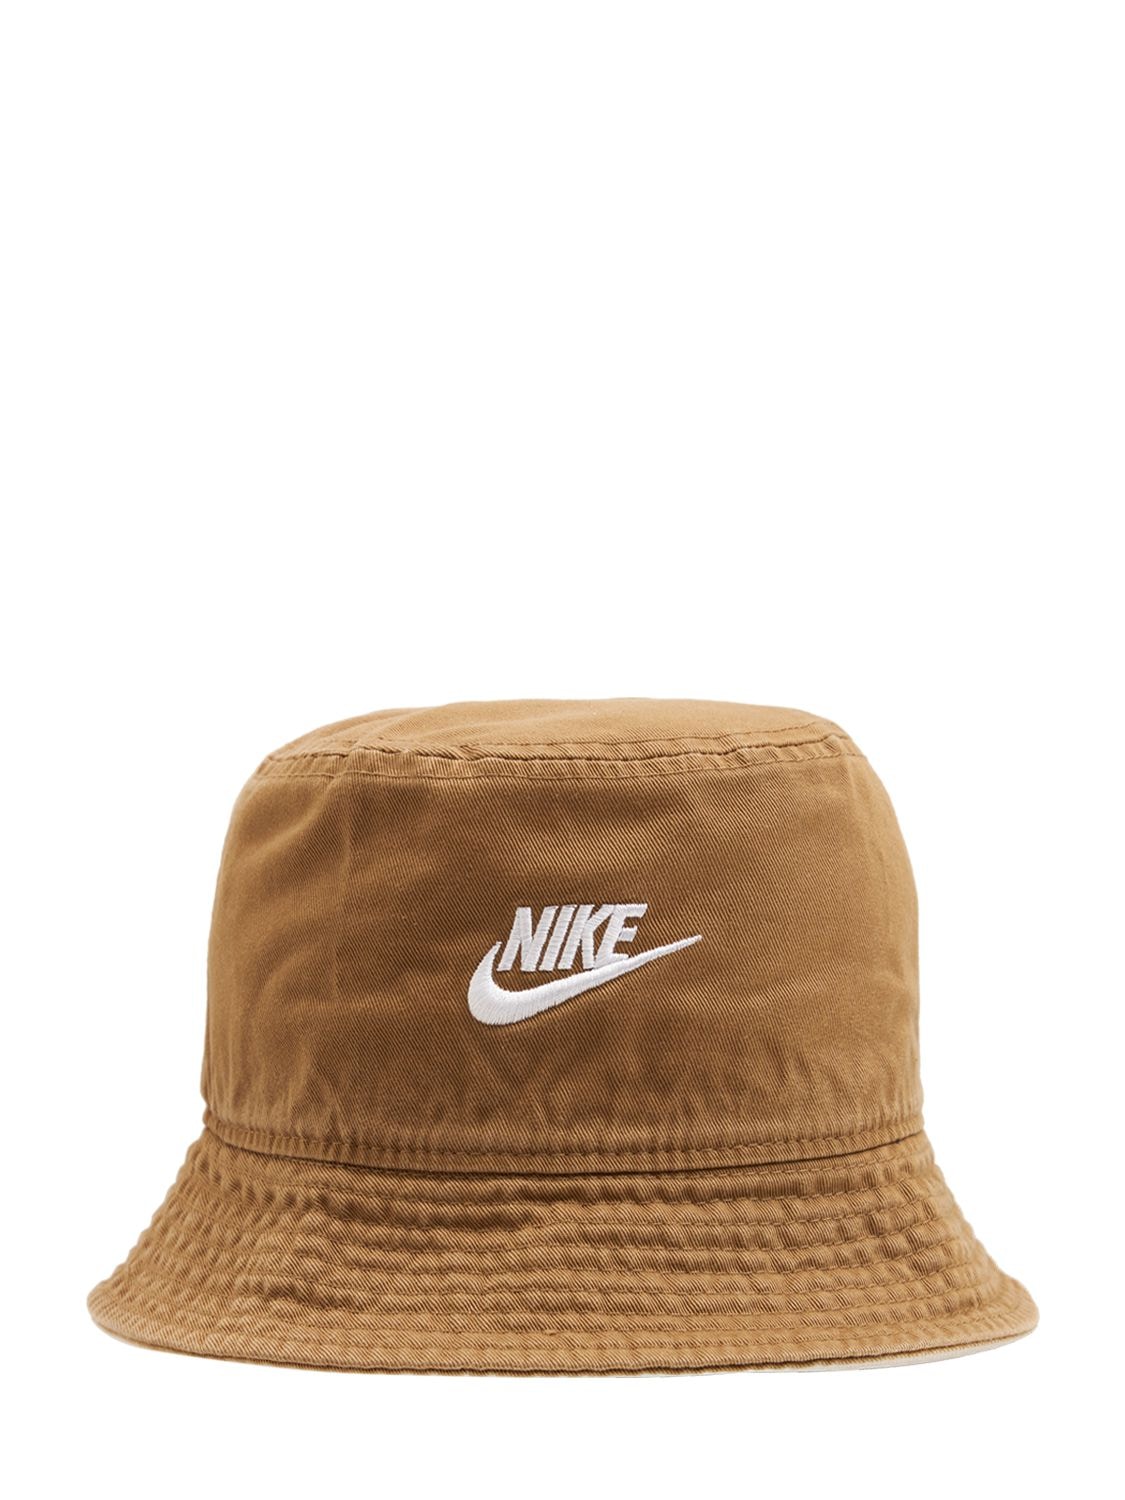 Nike Sportswear Futura Bucket Hat In Dk Driftwood / White | ModeSens